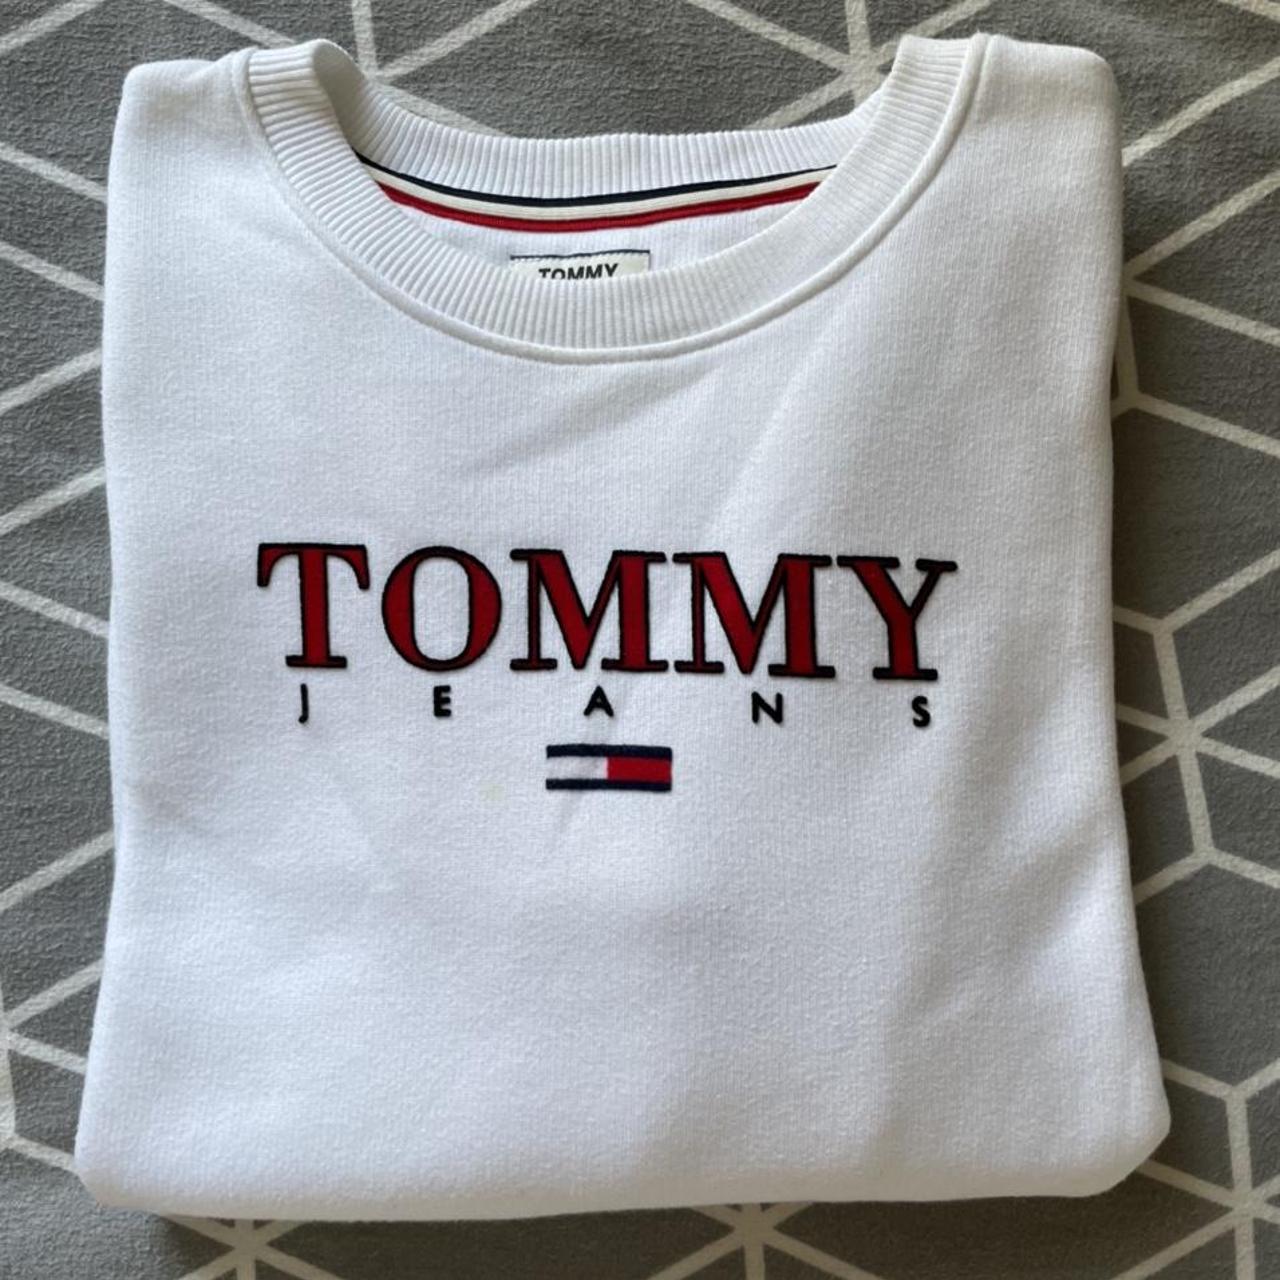 Genuine Tommy Hilfiger Sweater / Jumper in White -... - Depop